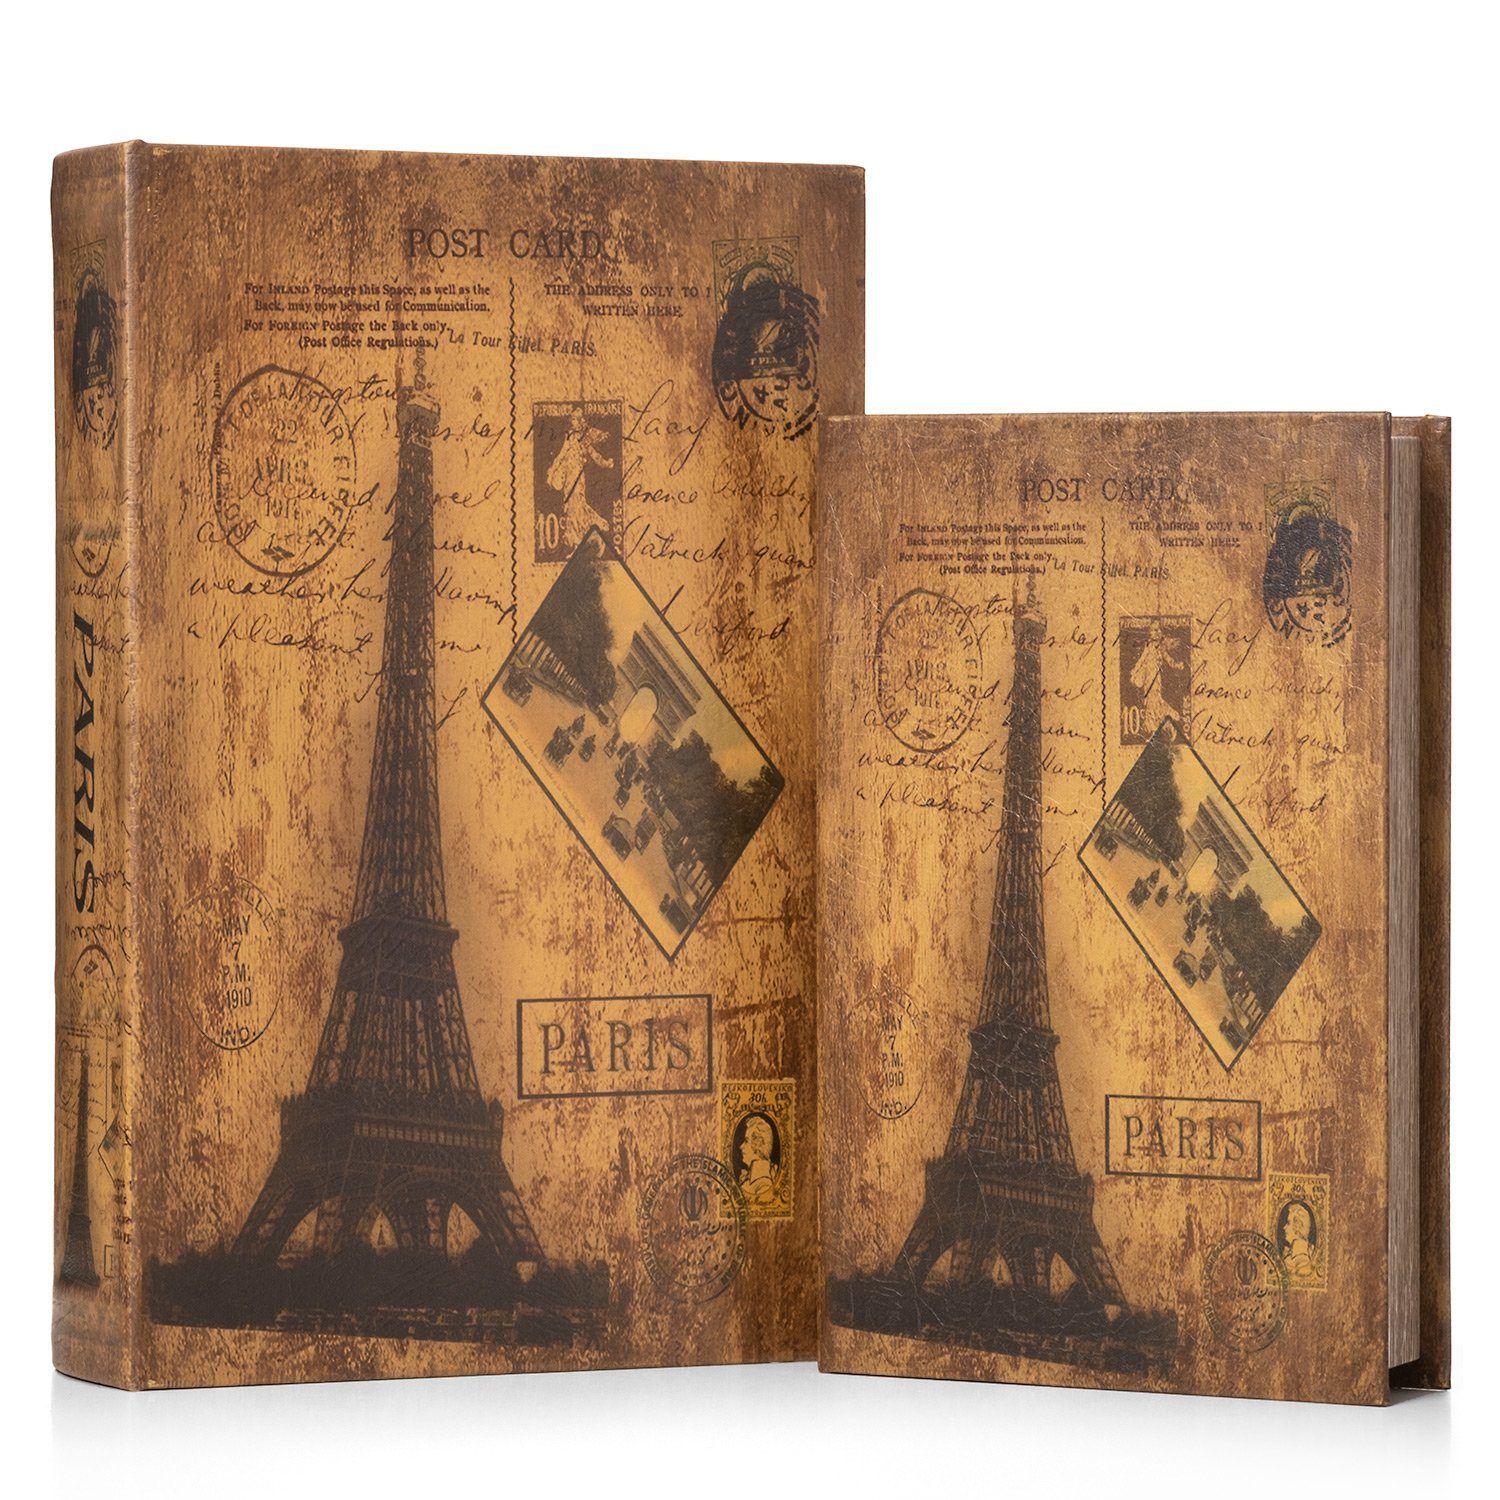 Moritz Etui Buchattrappe Eifelturm Frankreich Paris irrelevant, Buch Safe Box Schatulle Buchhülle Geldversteck Buchtresor